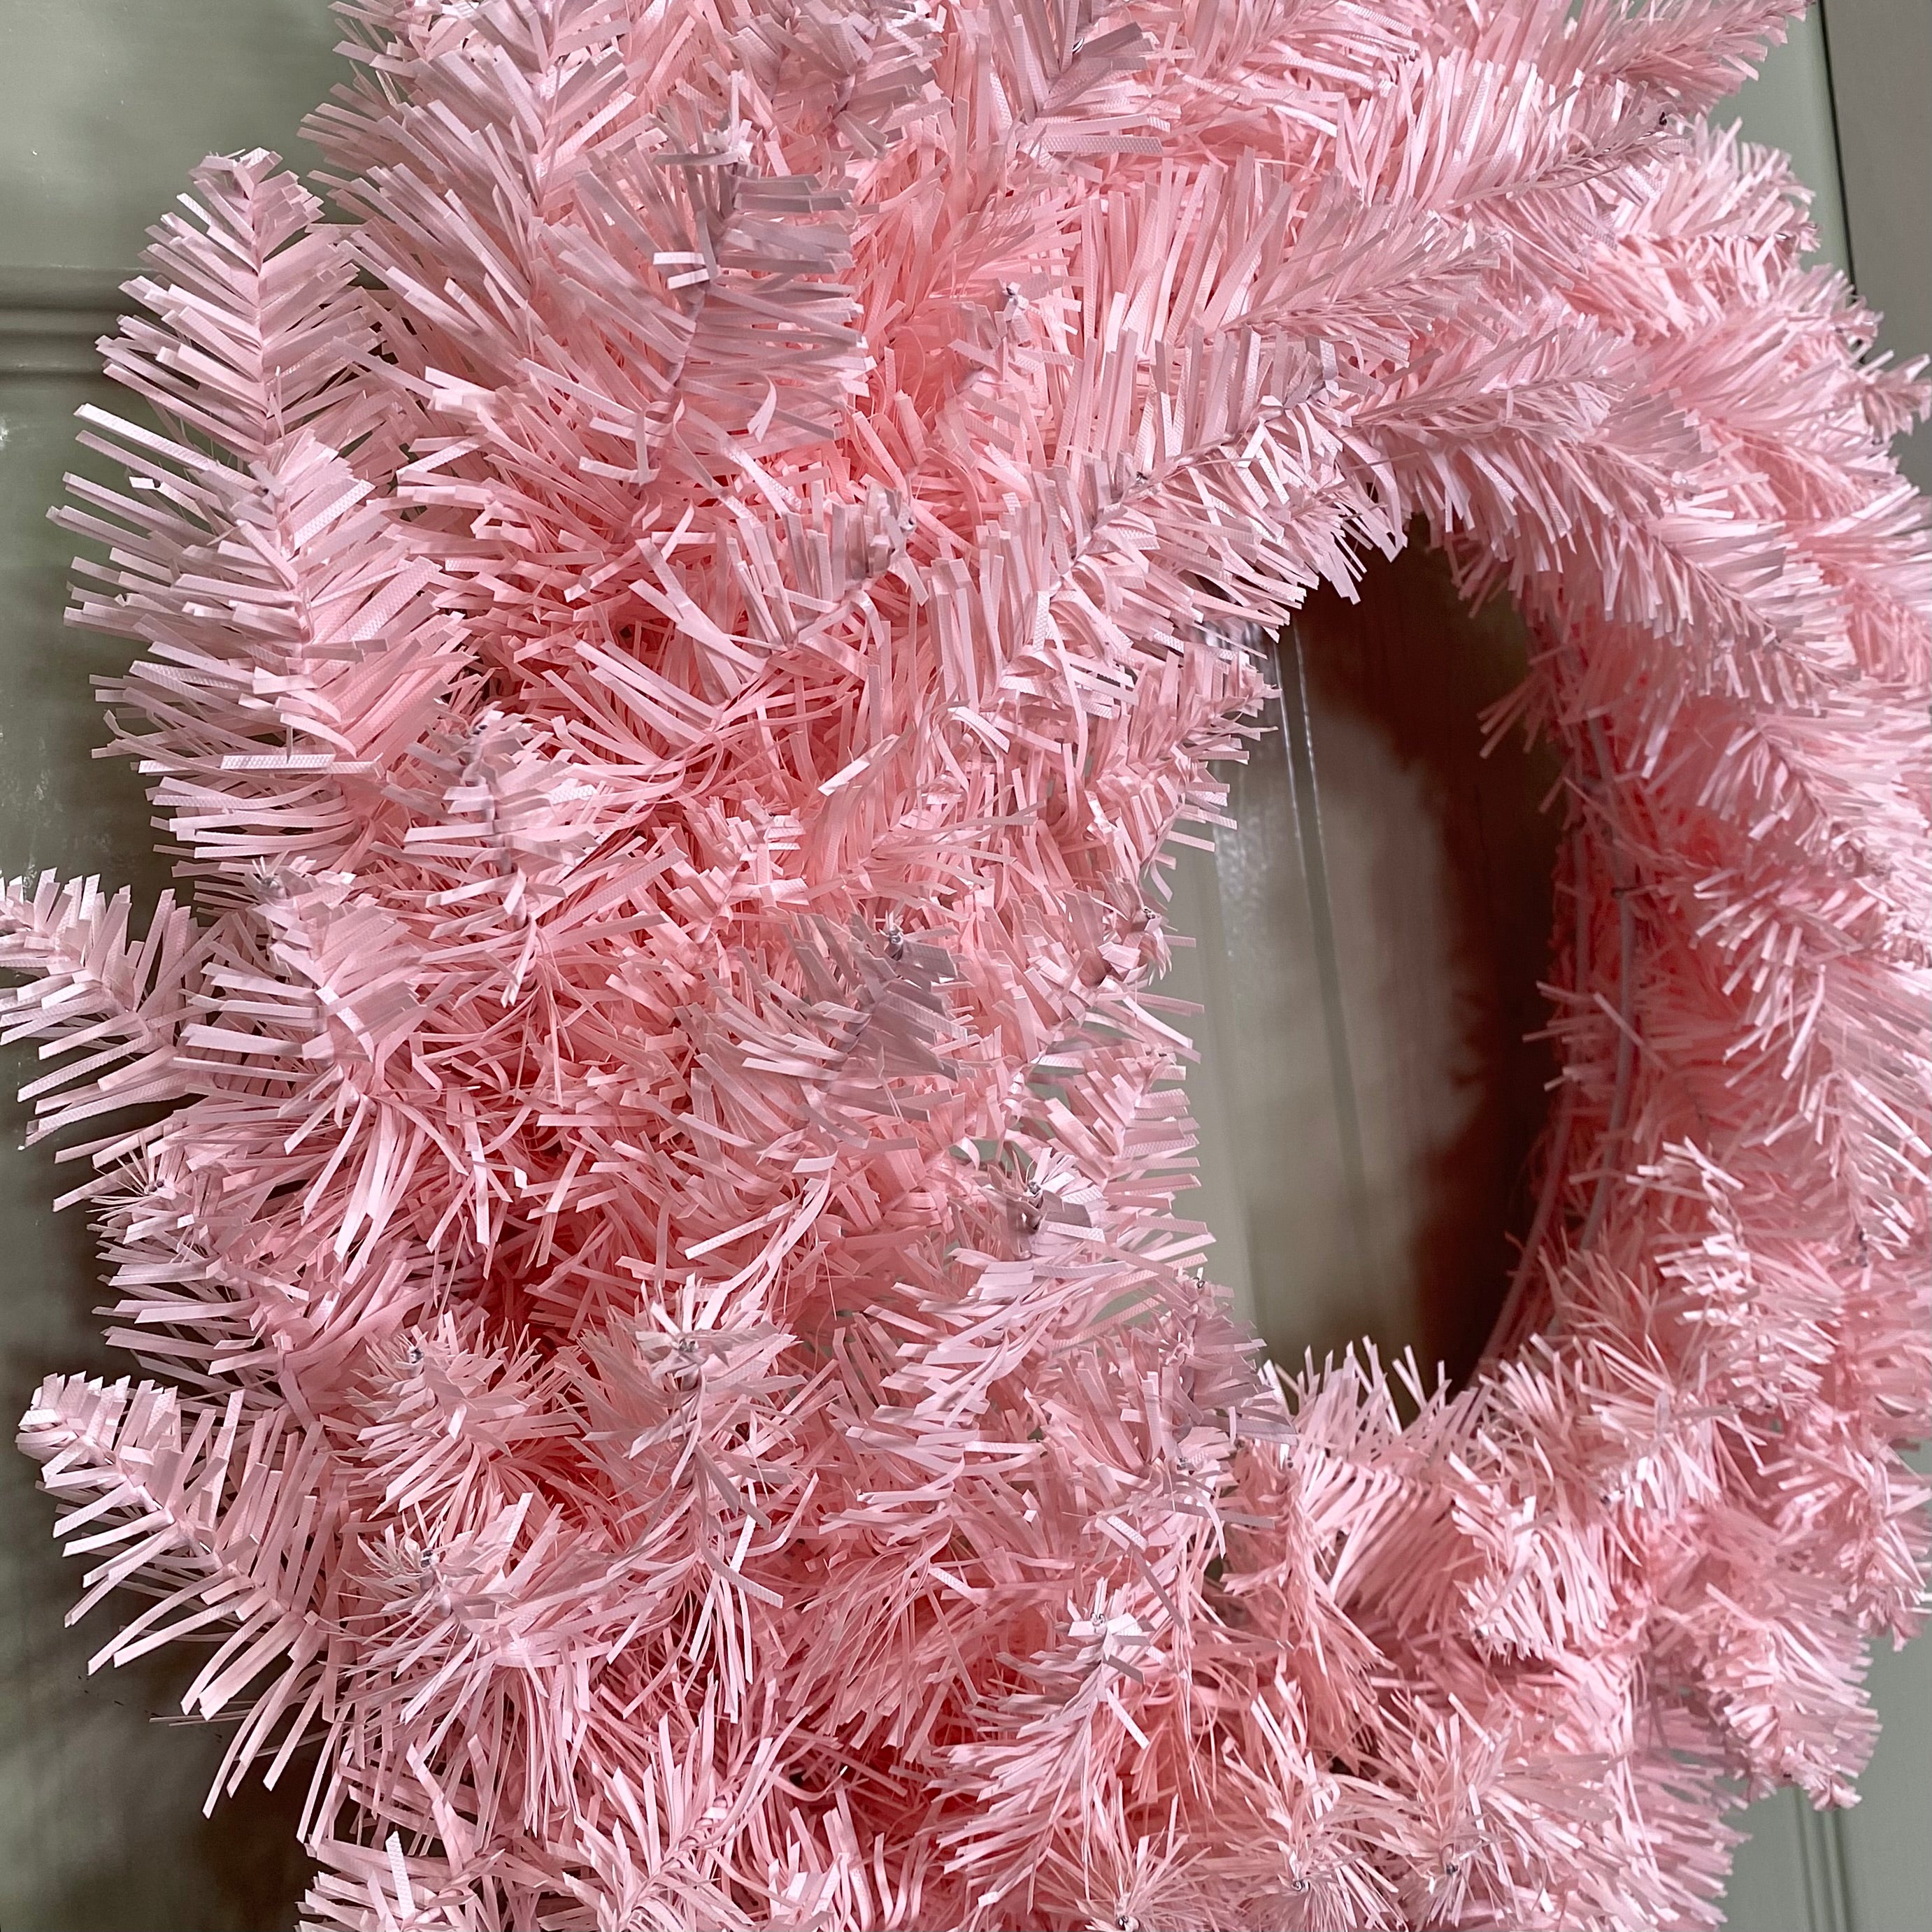 50cm Premier Rosewood Christmas Door Wreath in Pink